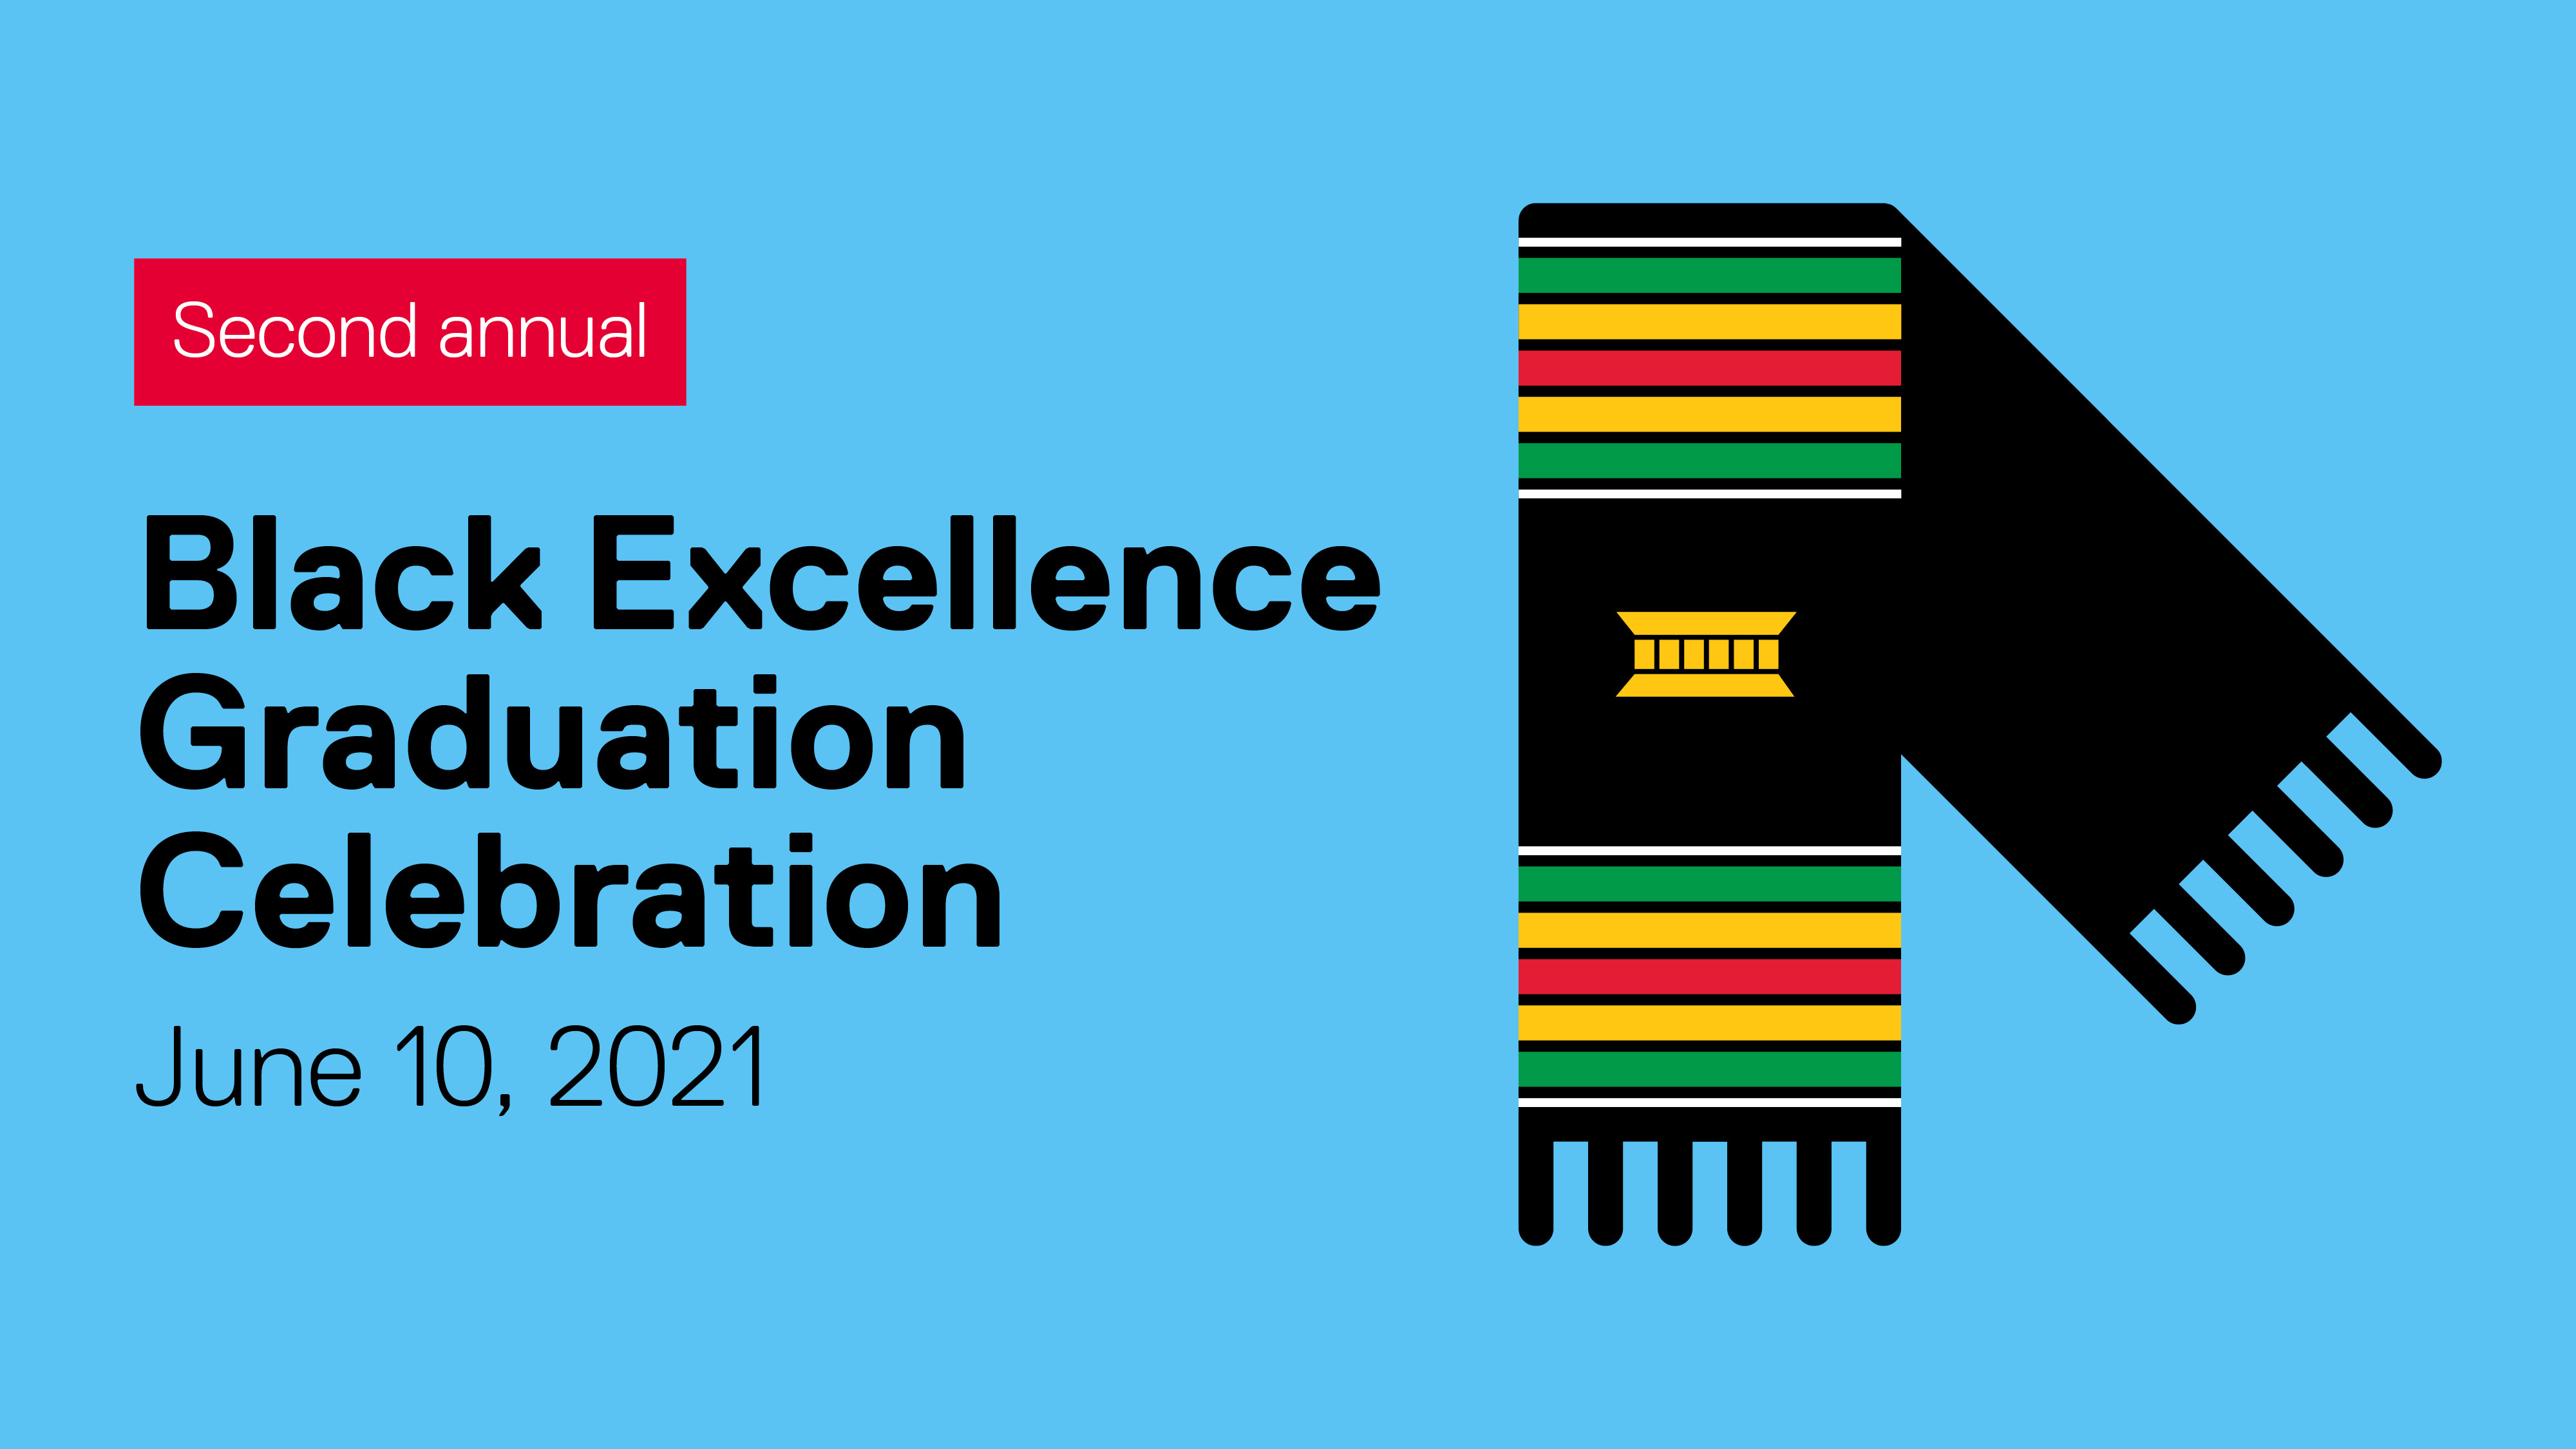 Black Excellence Graduation Celebration, June 10, 2021